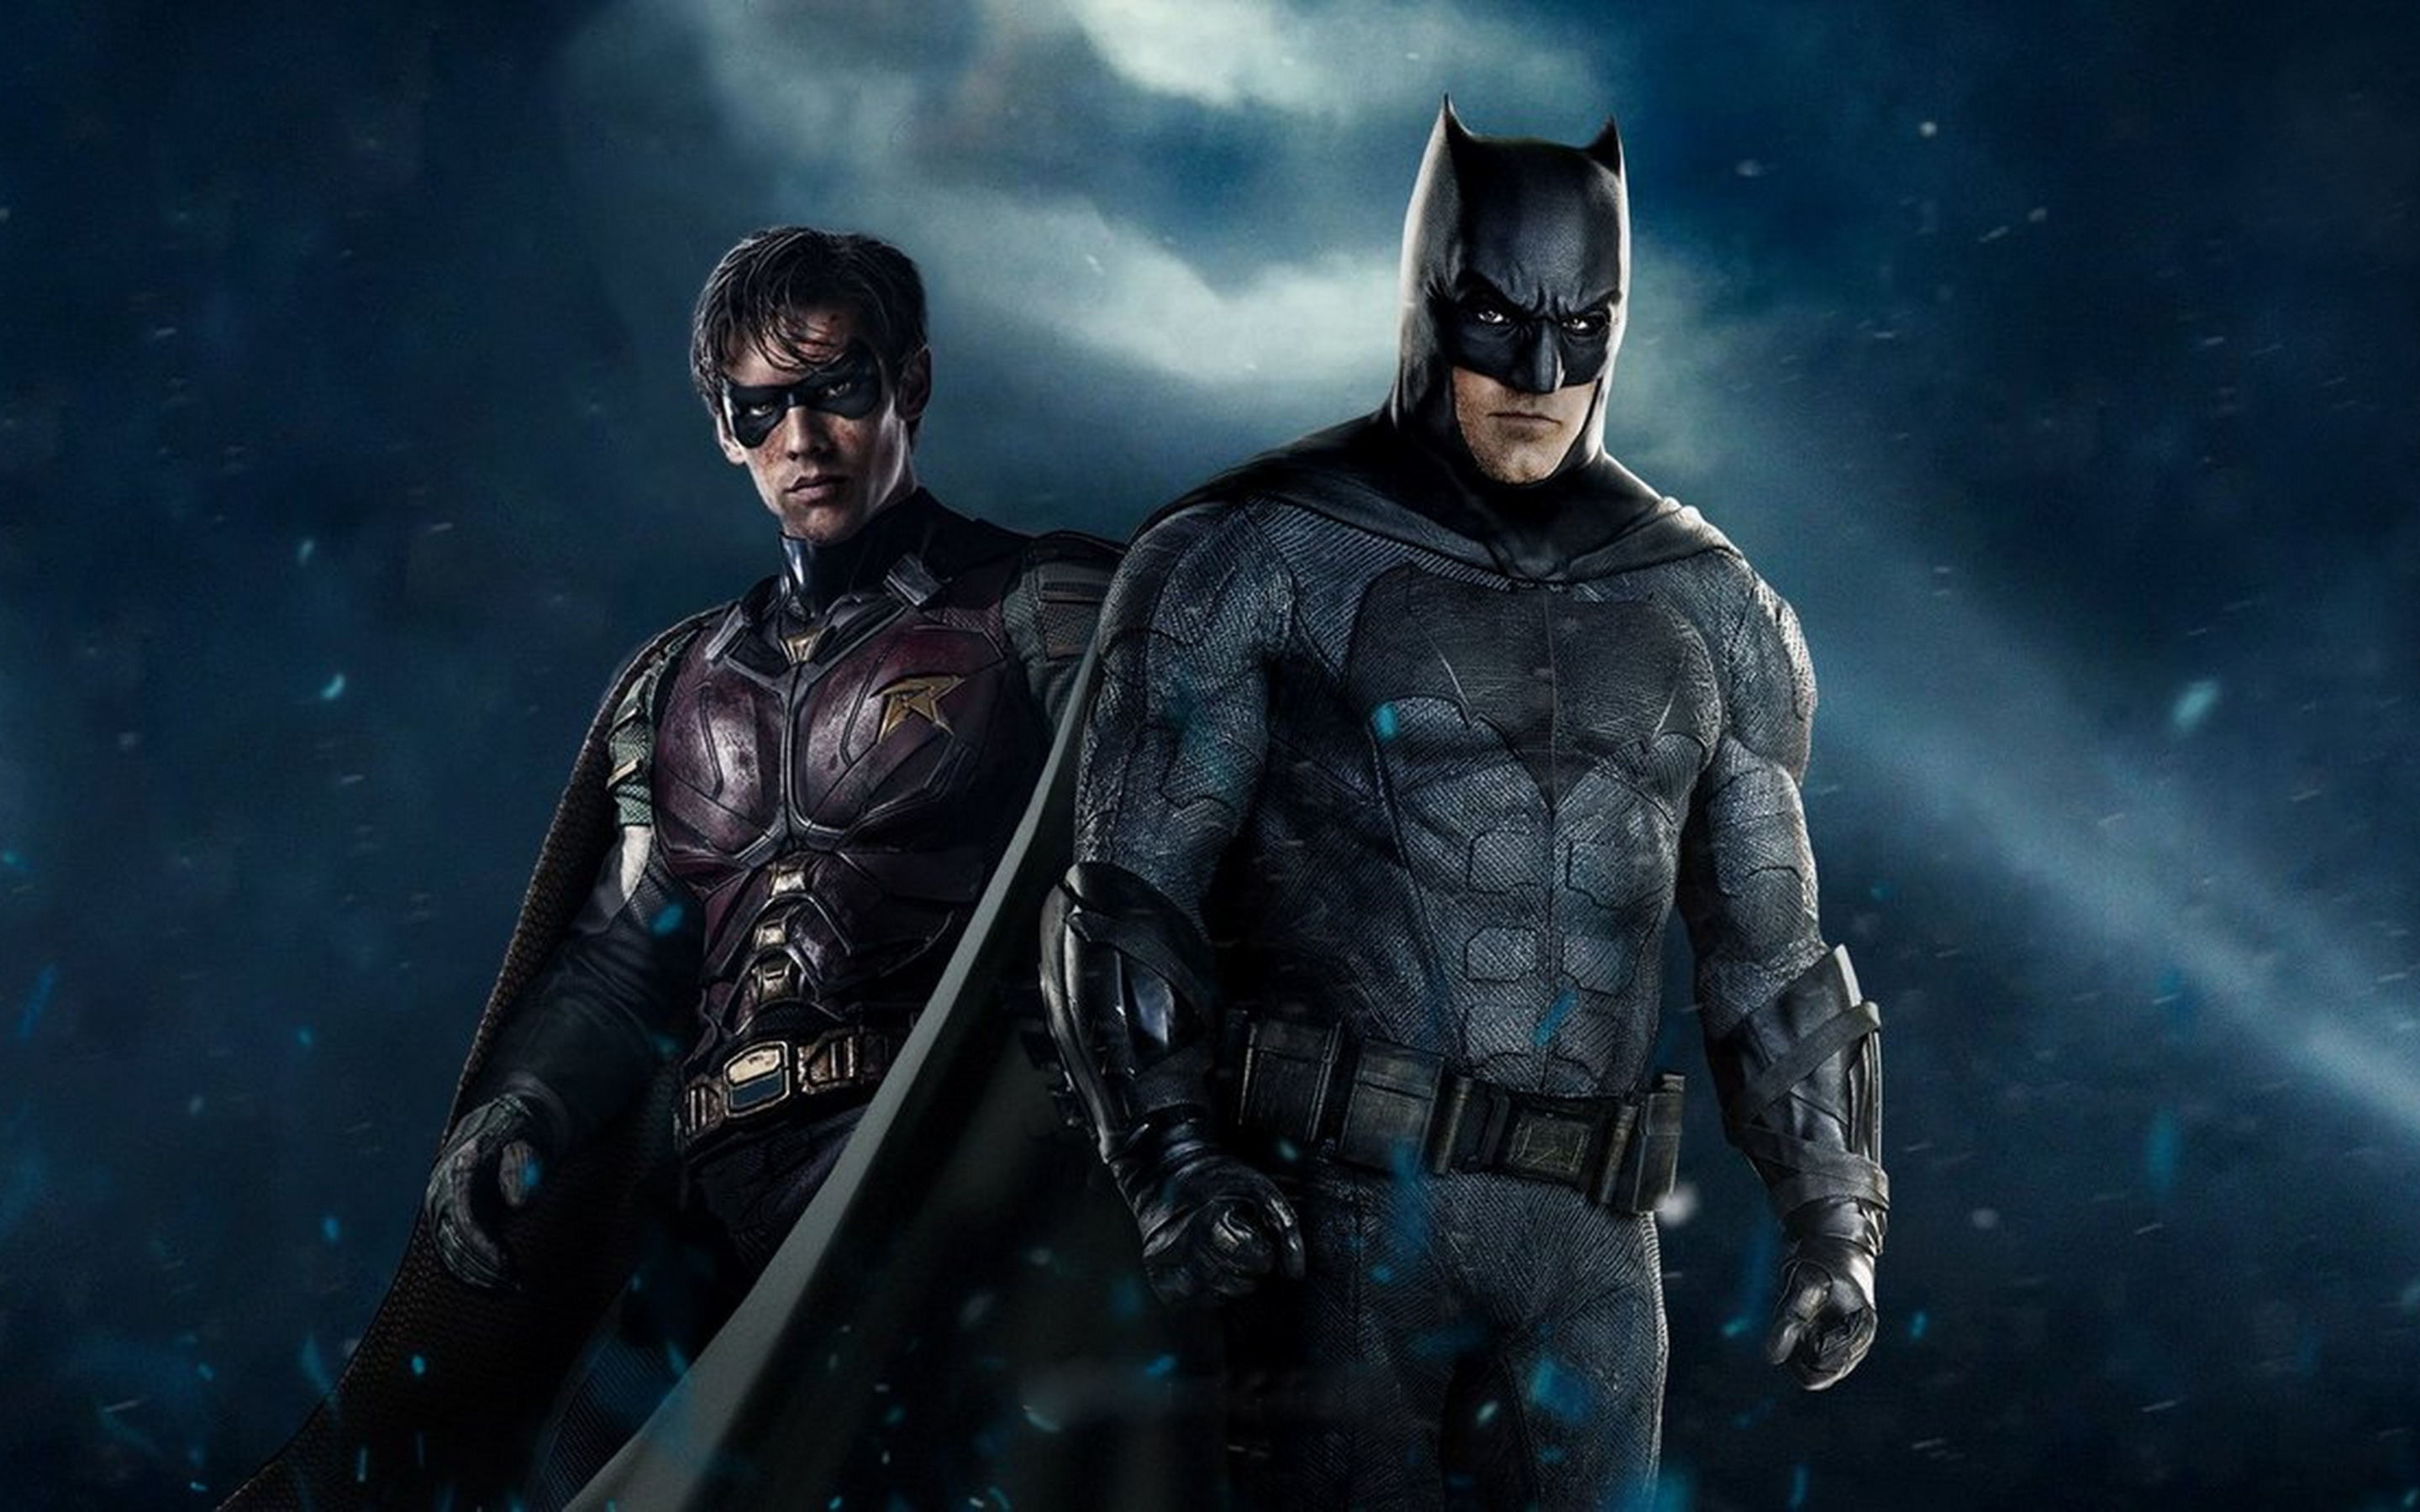 Titãs | Série faz referência a dois famosos vilões do Batman